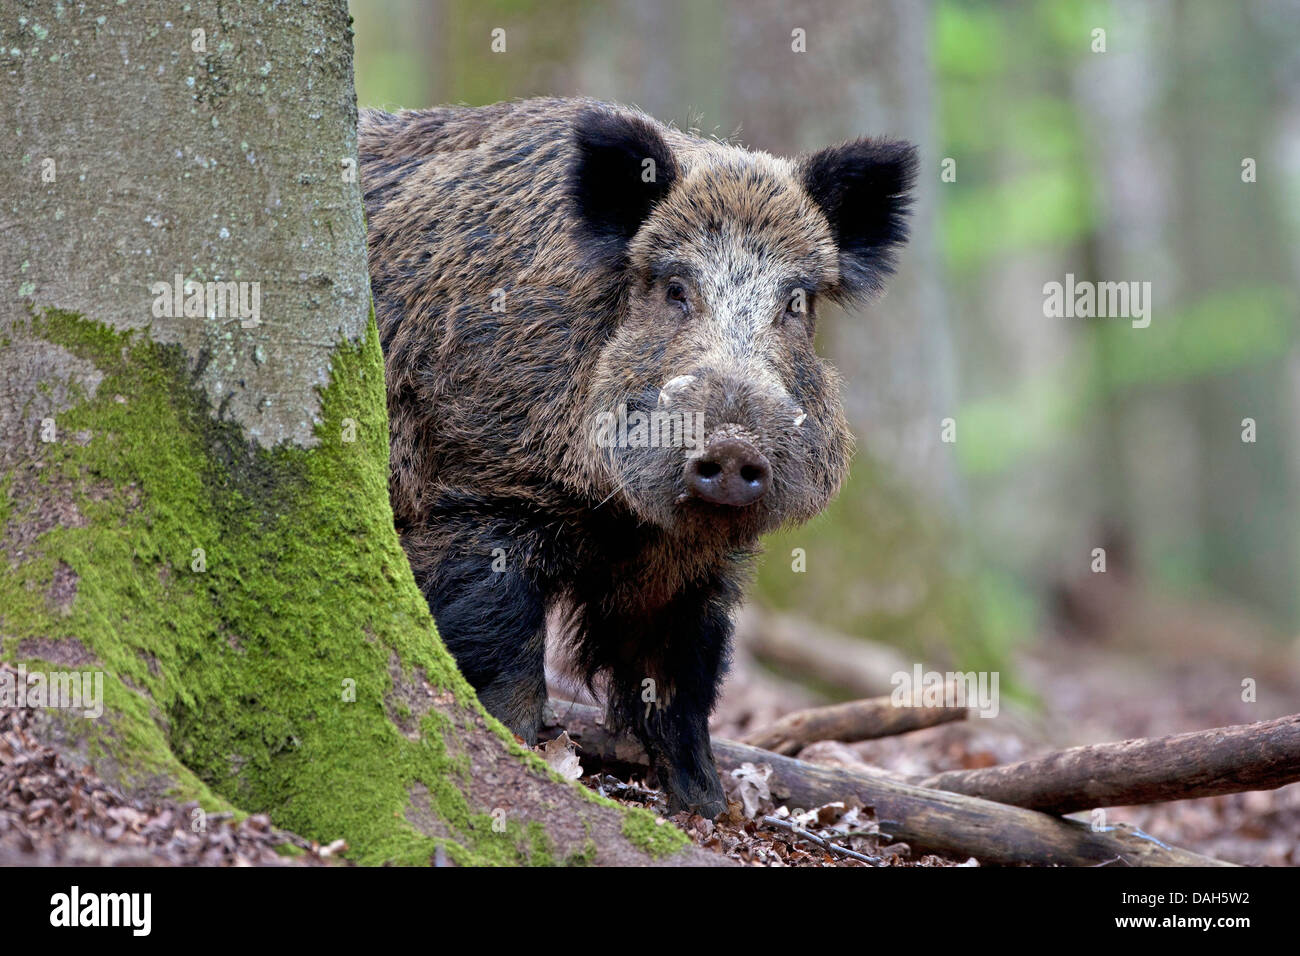 Le sanglier, le porc, le sanglier (Sus scrofa), peering tusker derrière un tronc d'arbre, Belgique Banque D'Images